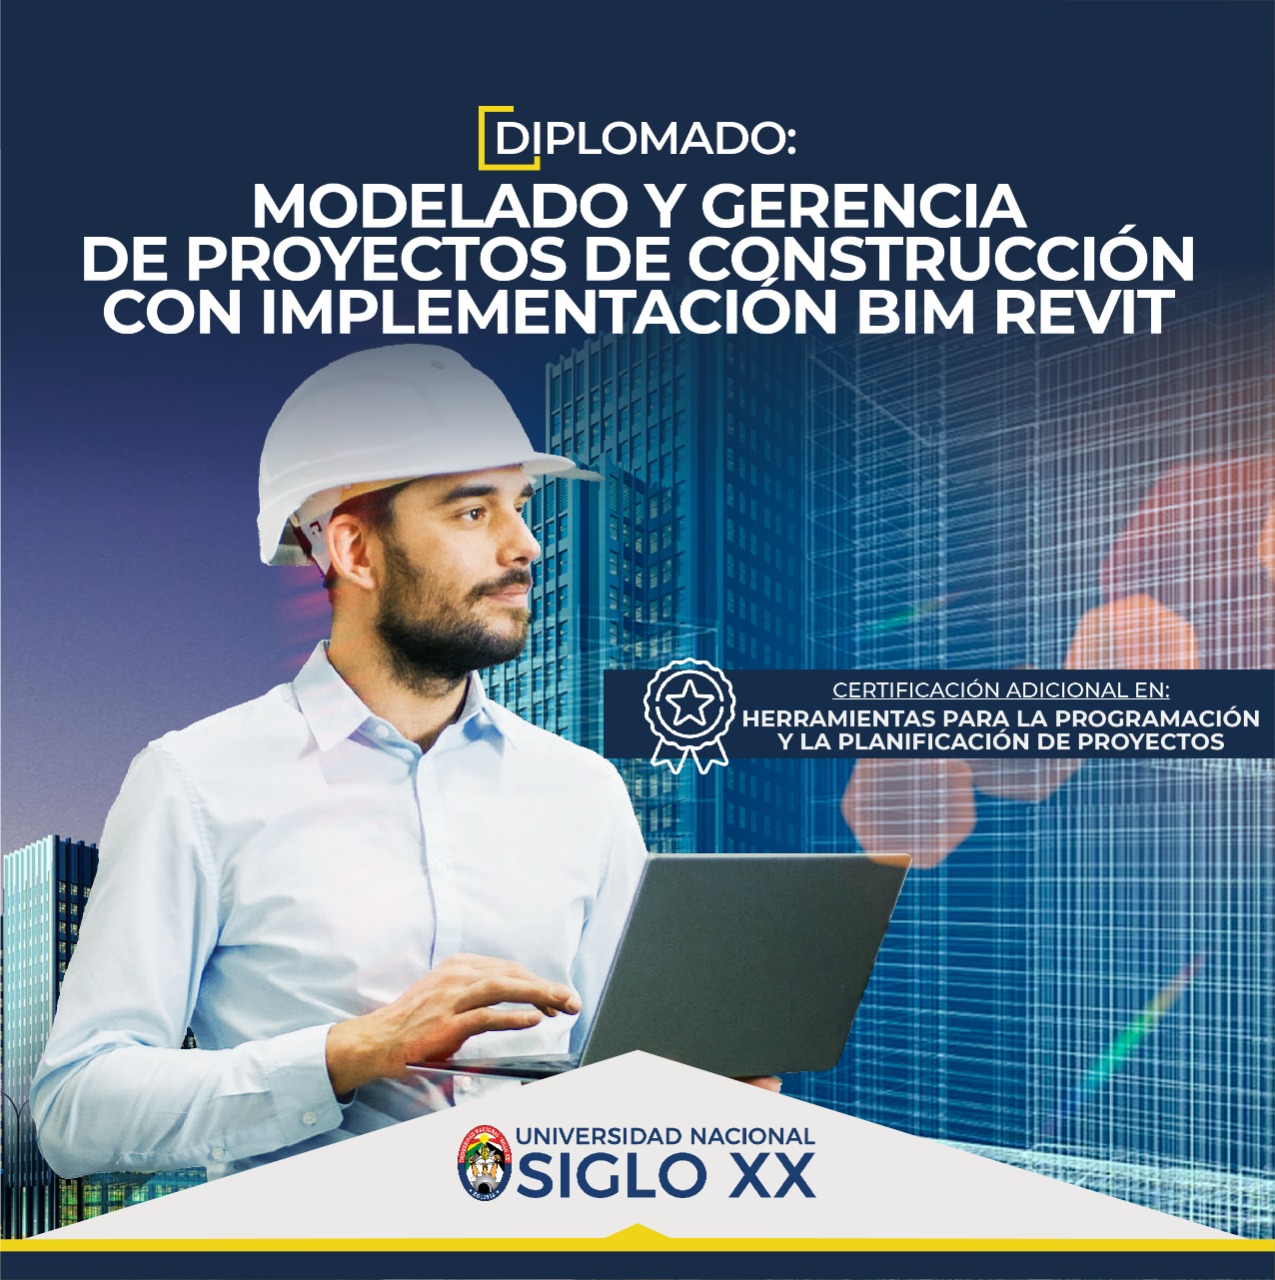 Diplomado MODELADO Y GERENCIA DE PROYECTOS DE CONSTRUCCIÓN CON IMPLEMENTACIÓN BIM REVIT